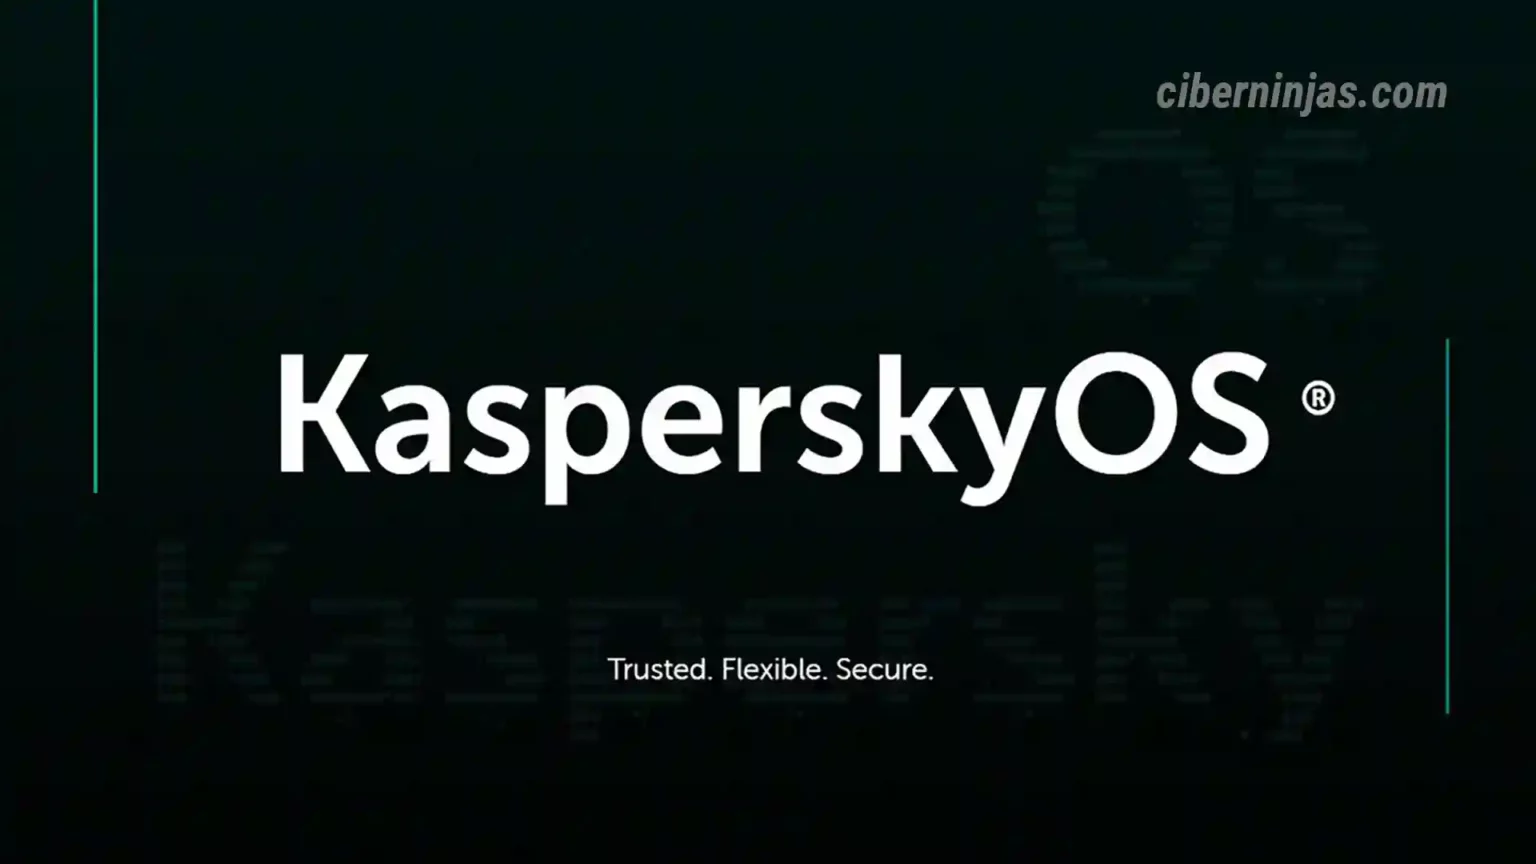 KasperskyOS estará disponible para usuarios de teléfonos inteligentes